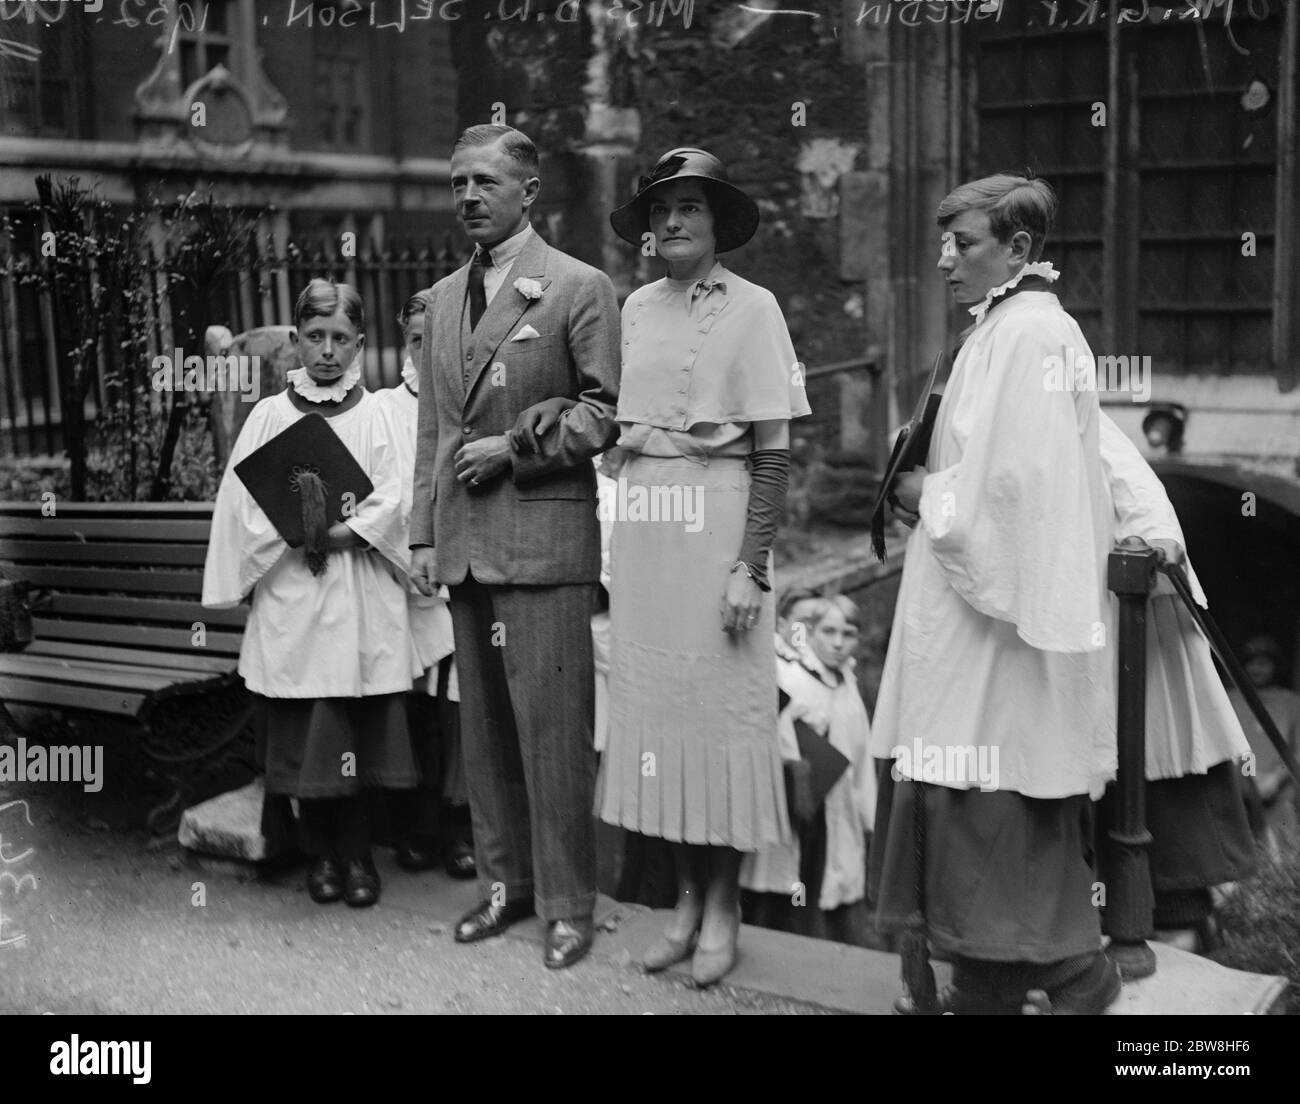 Mariage de la société à la Chapelle Savoy . M. G R P Bredin , Service politique du Soudan, a été marié à la Chapelle Savoy , Londres , à Mlle D W Selison . La mariée et le marié quittant la Chapelle après la cérémonie . 6 septembre 1932 Banque D'Images